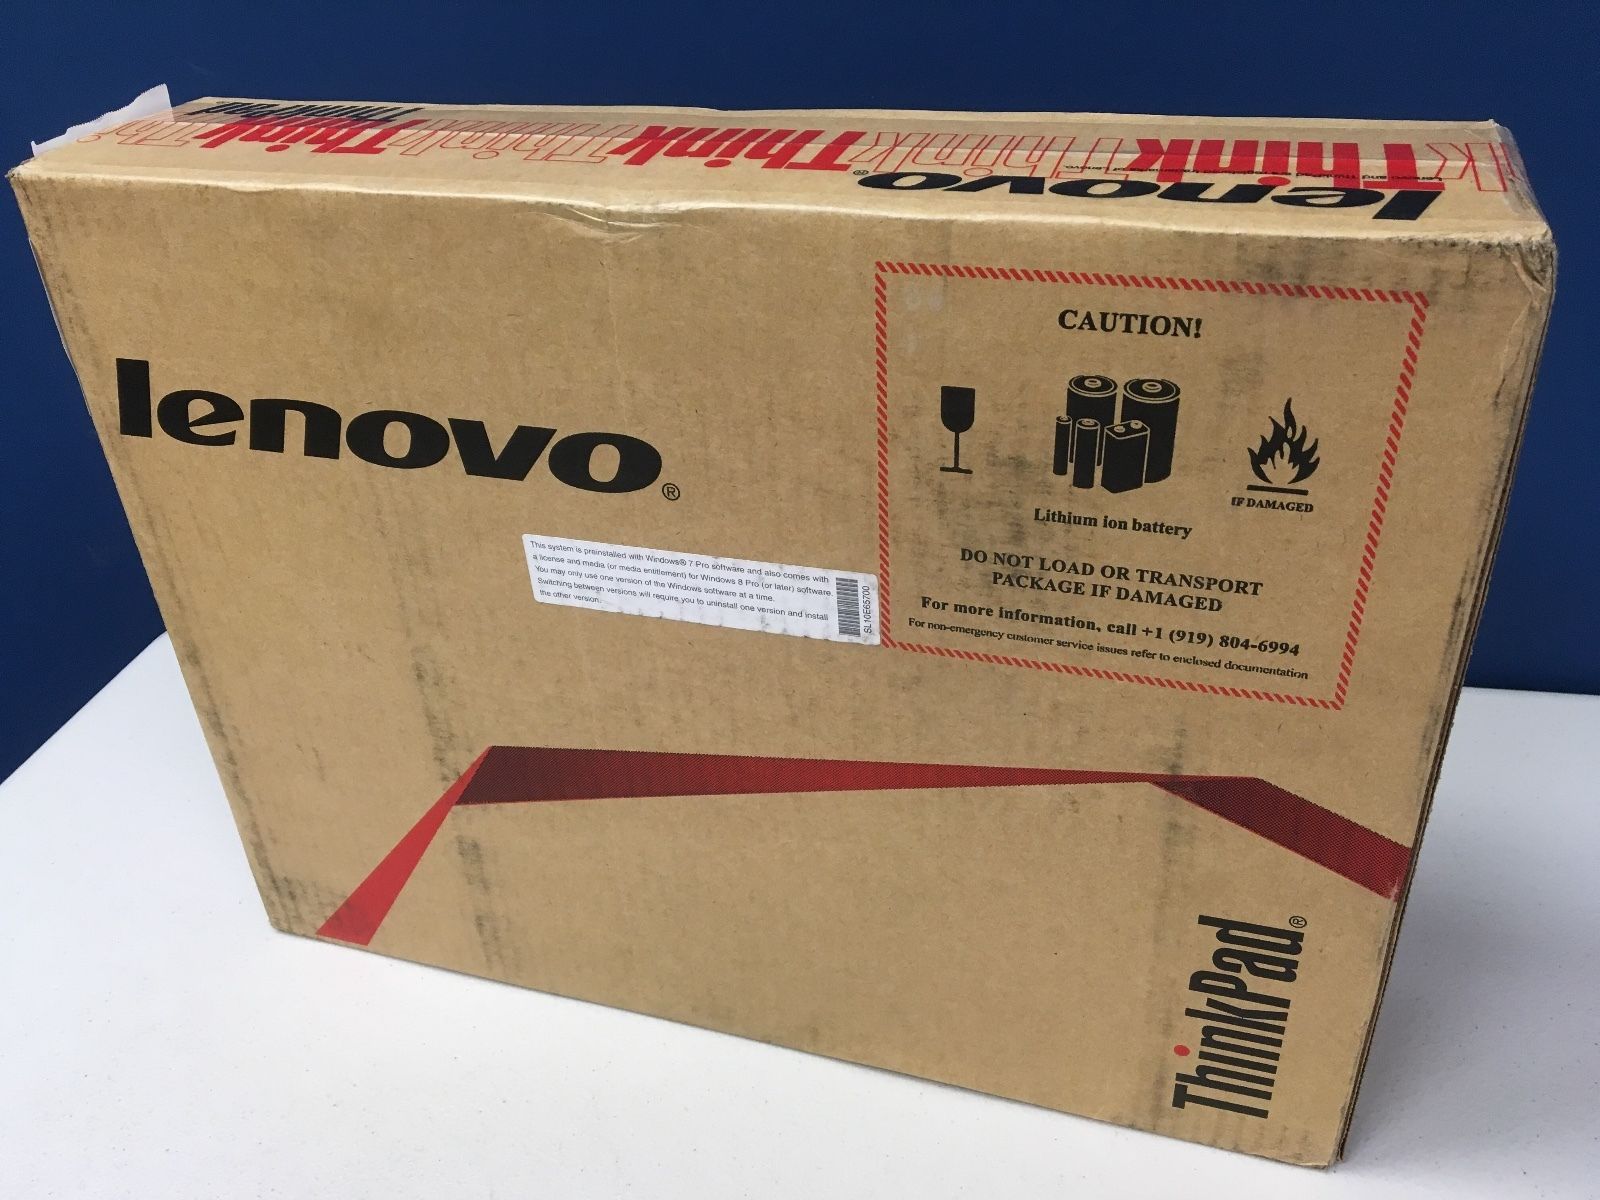 Lenovo ThinkPad X250 Core i7 - 500 usd